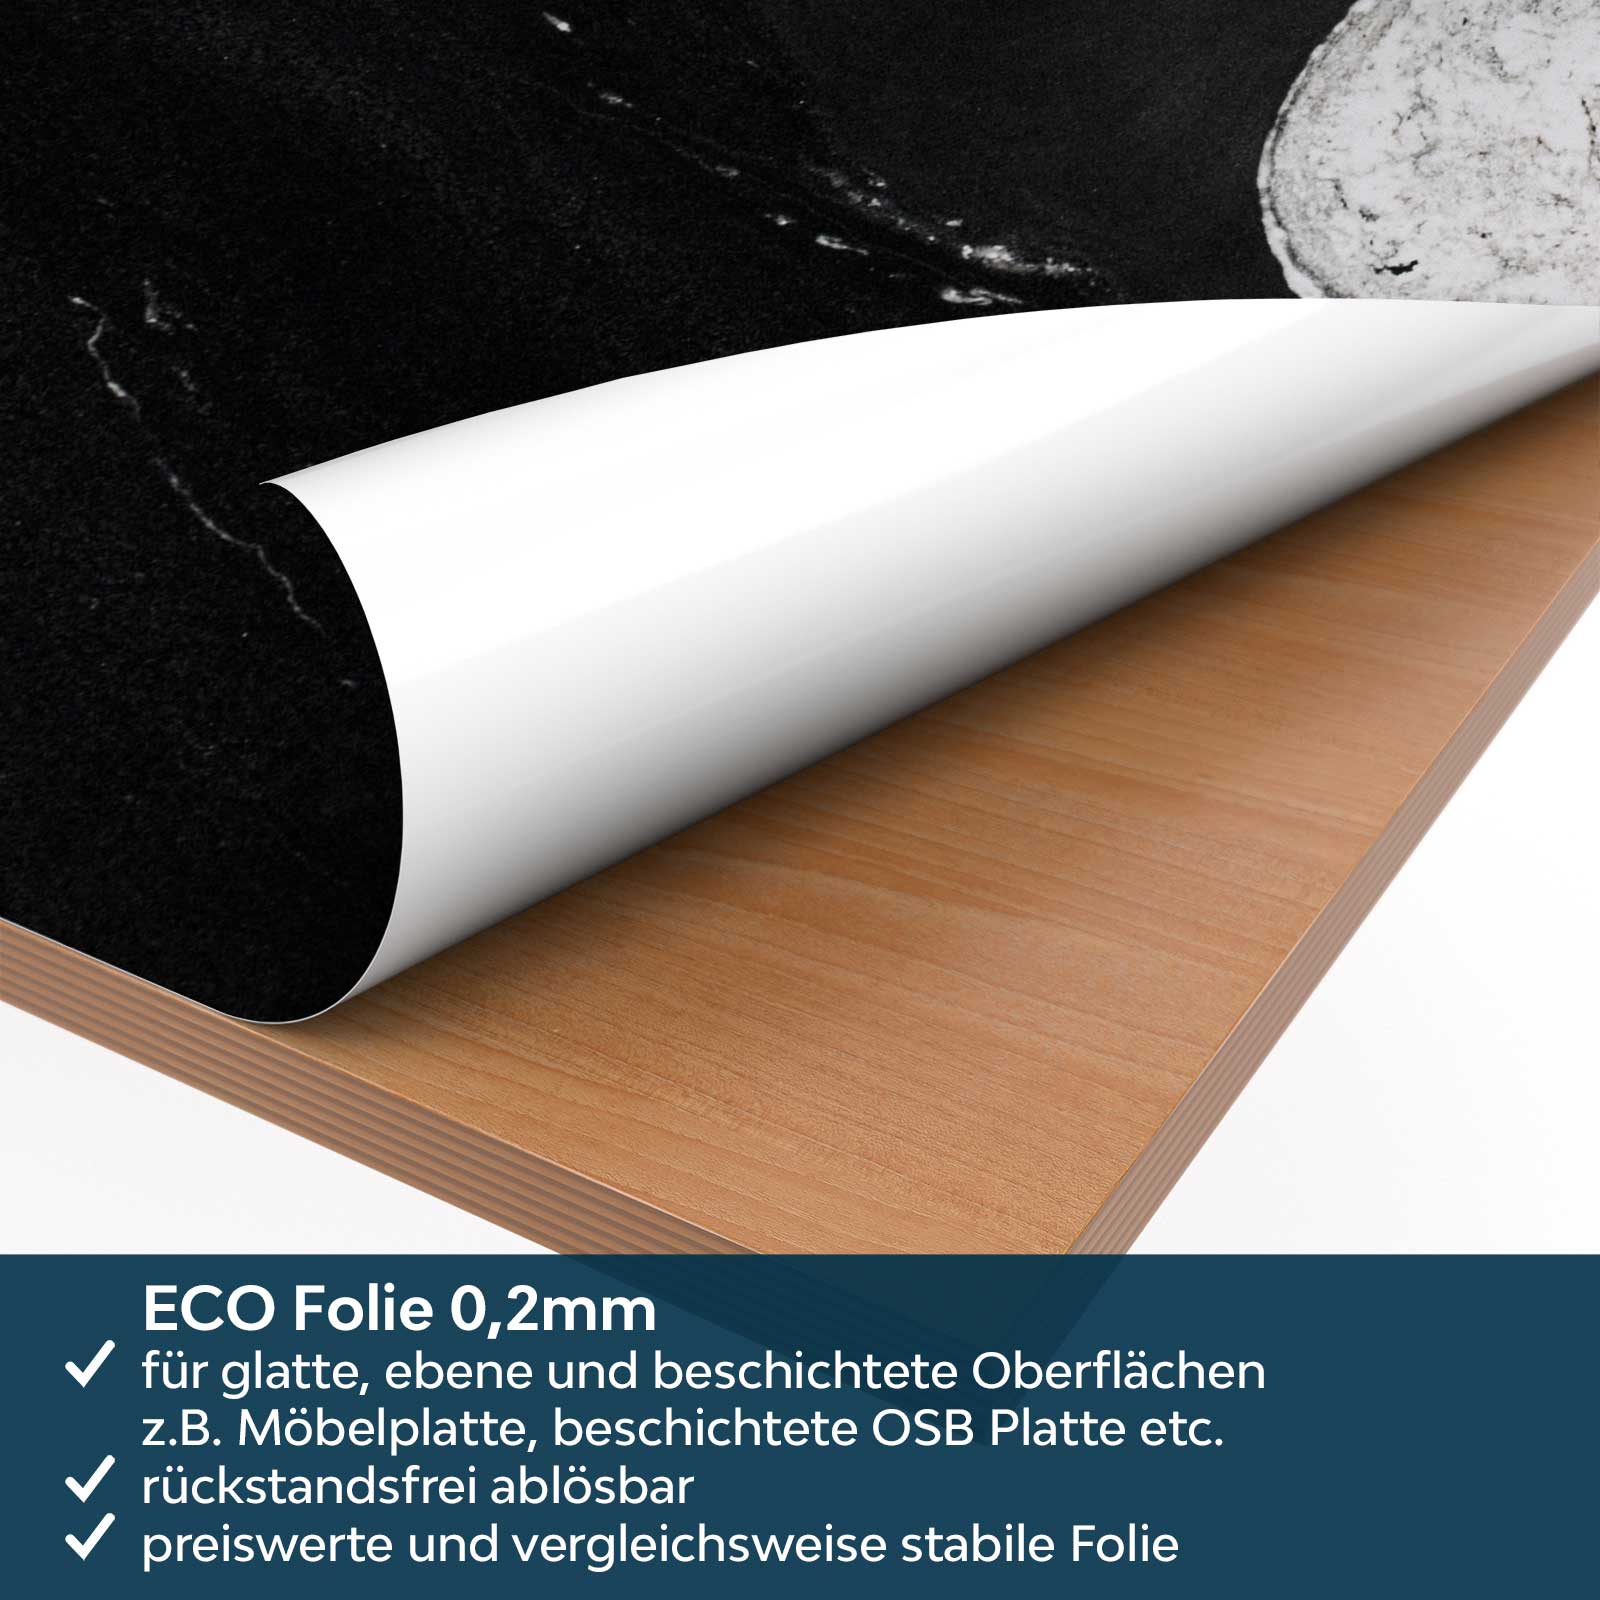 https://www.folien21.de/images/product_images/original_images/kuechenrueckwand-folie/steinwand/071/kuechenrueckwand-folie-marmor-schwarz-weiss-material-eco.jpg